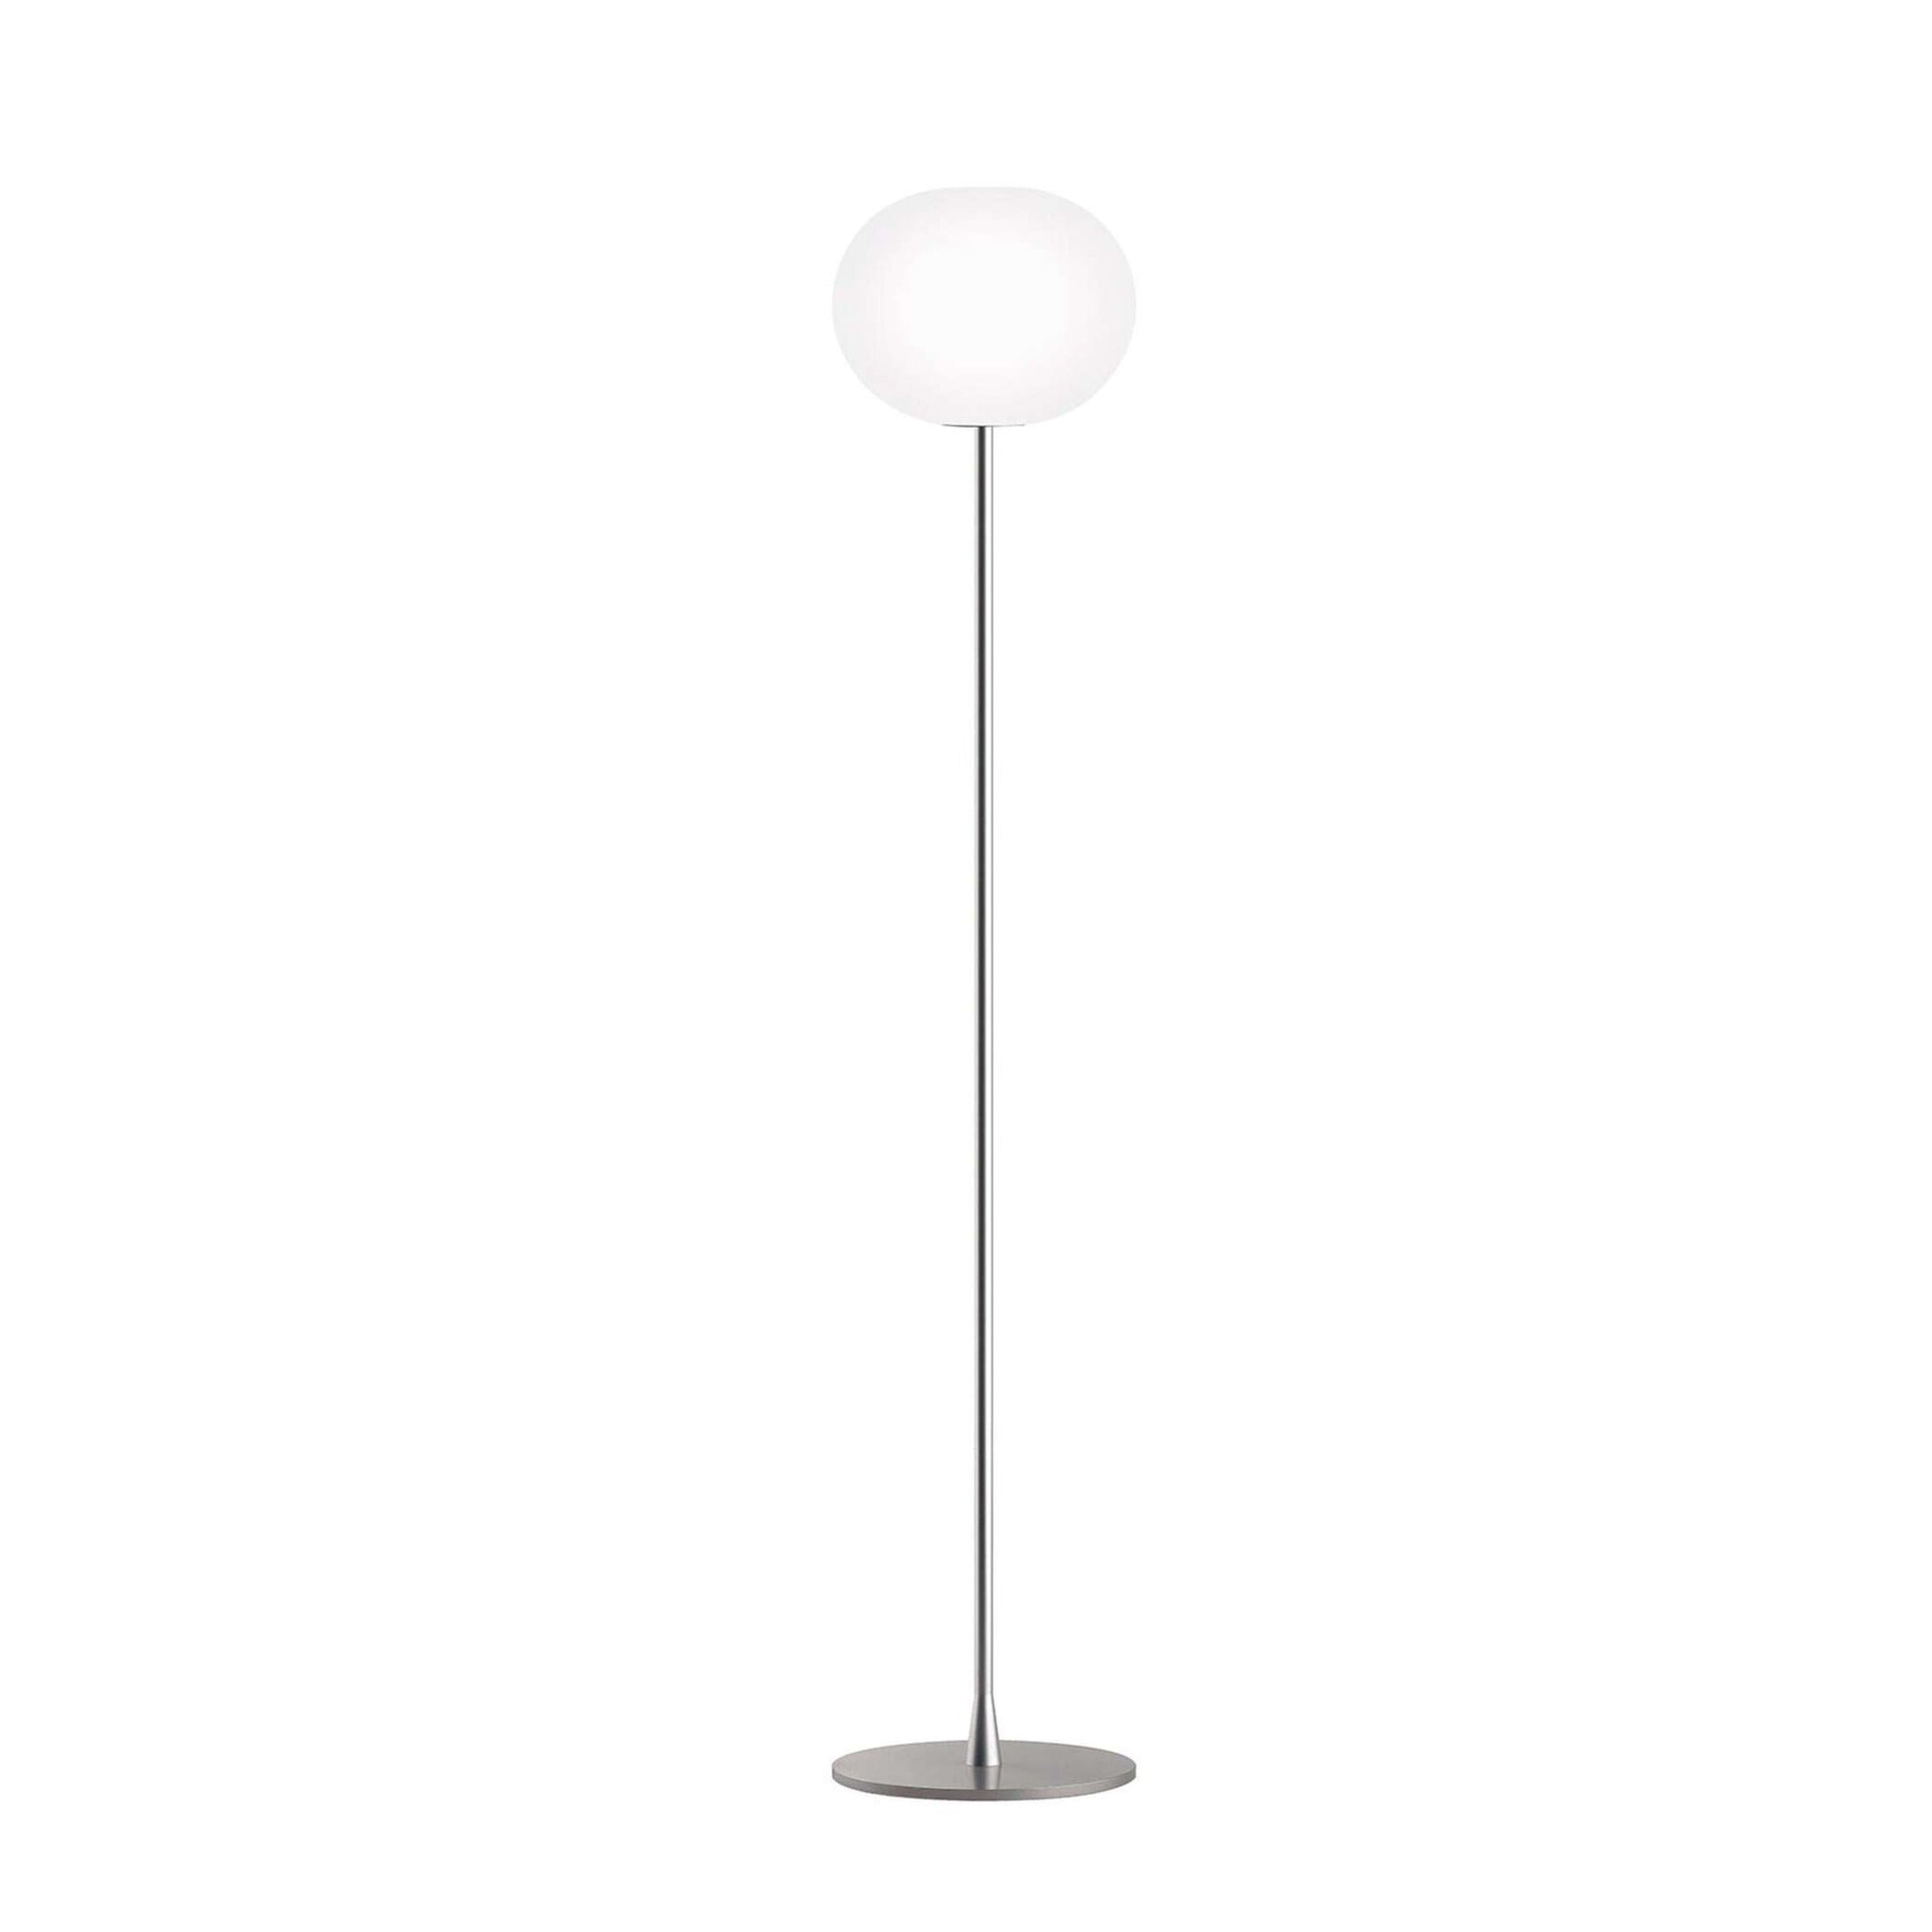 Lampa podłogowa GLO-BALL srebrny Flos S bez żarówki  Eye on Design